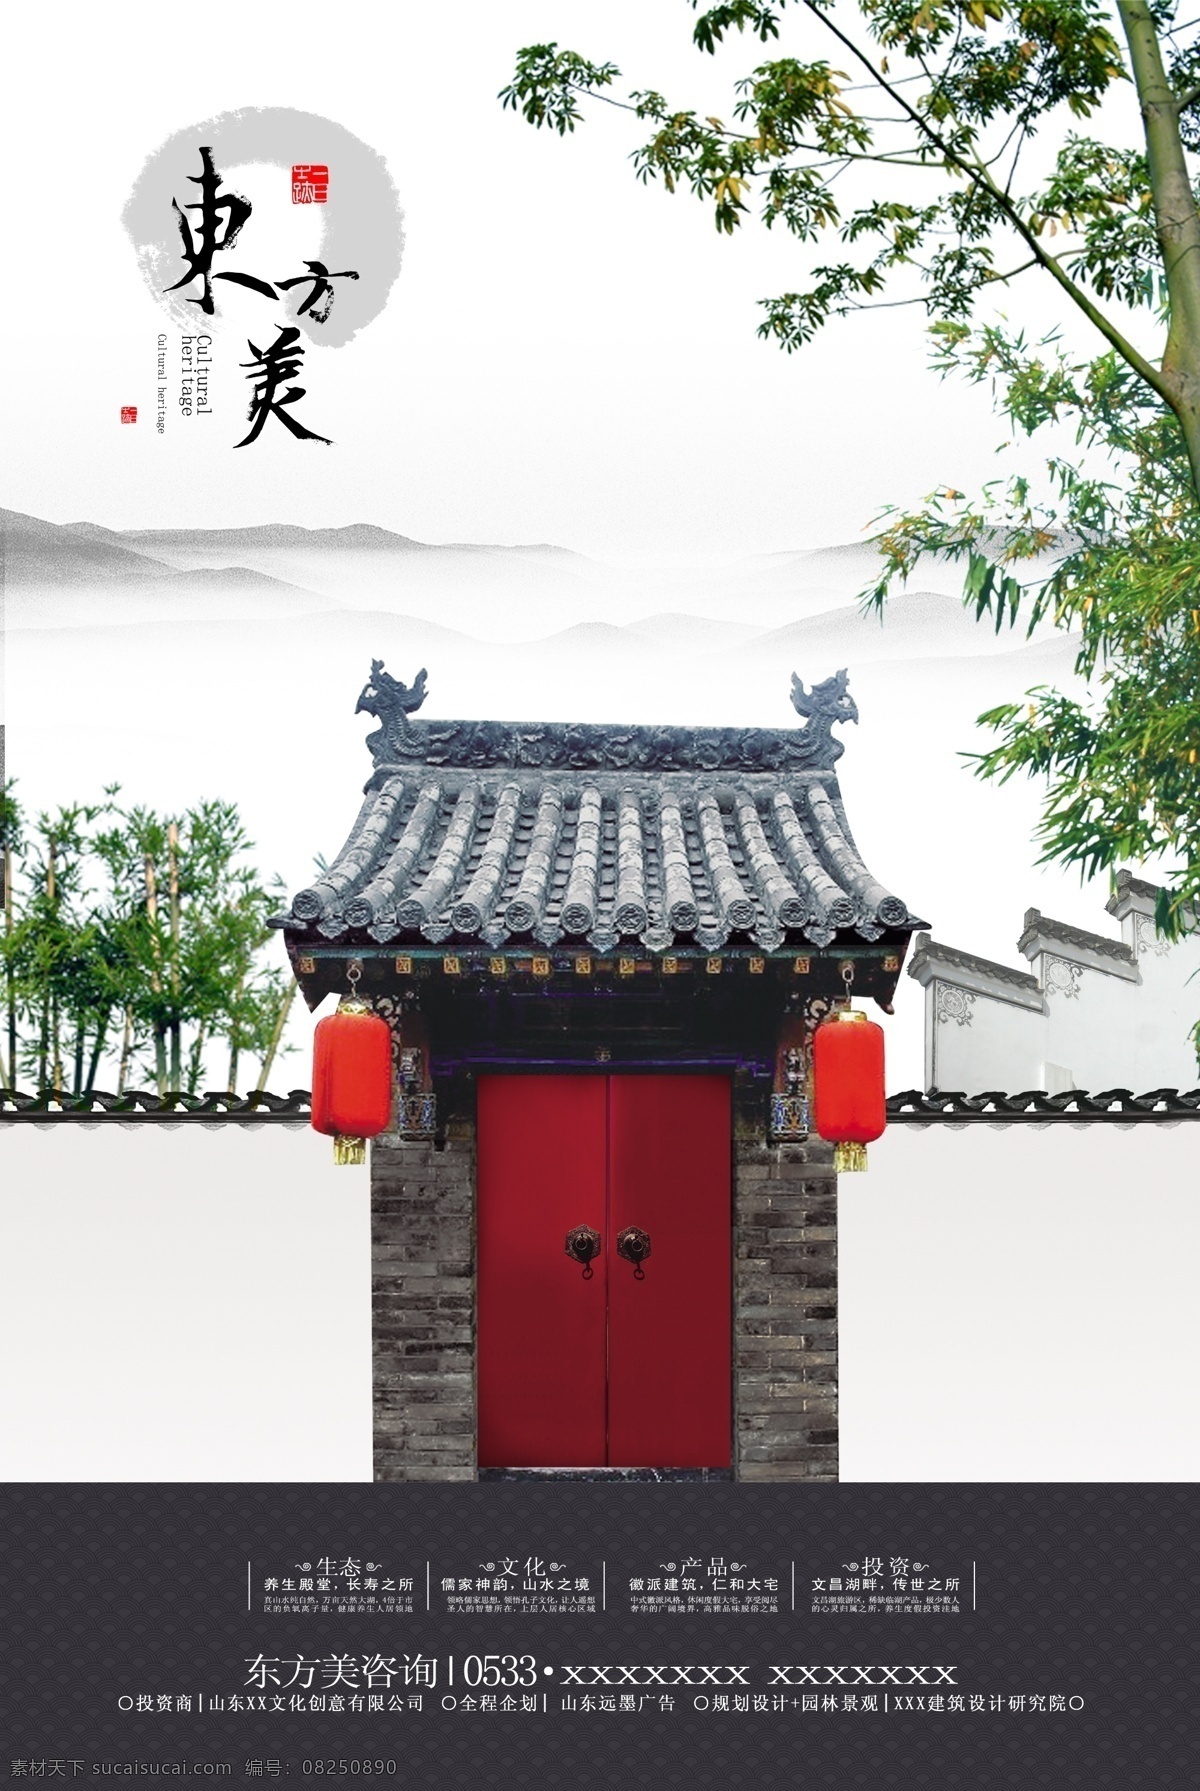 中国 风 地产 广告 中国风 水墨 竹子 灯笼 古式建筑 房地产 房地产海报 宣传海报 房产广告 广告设计模板 psd素材 白色